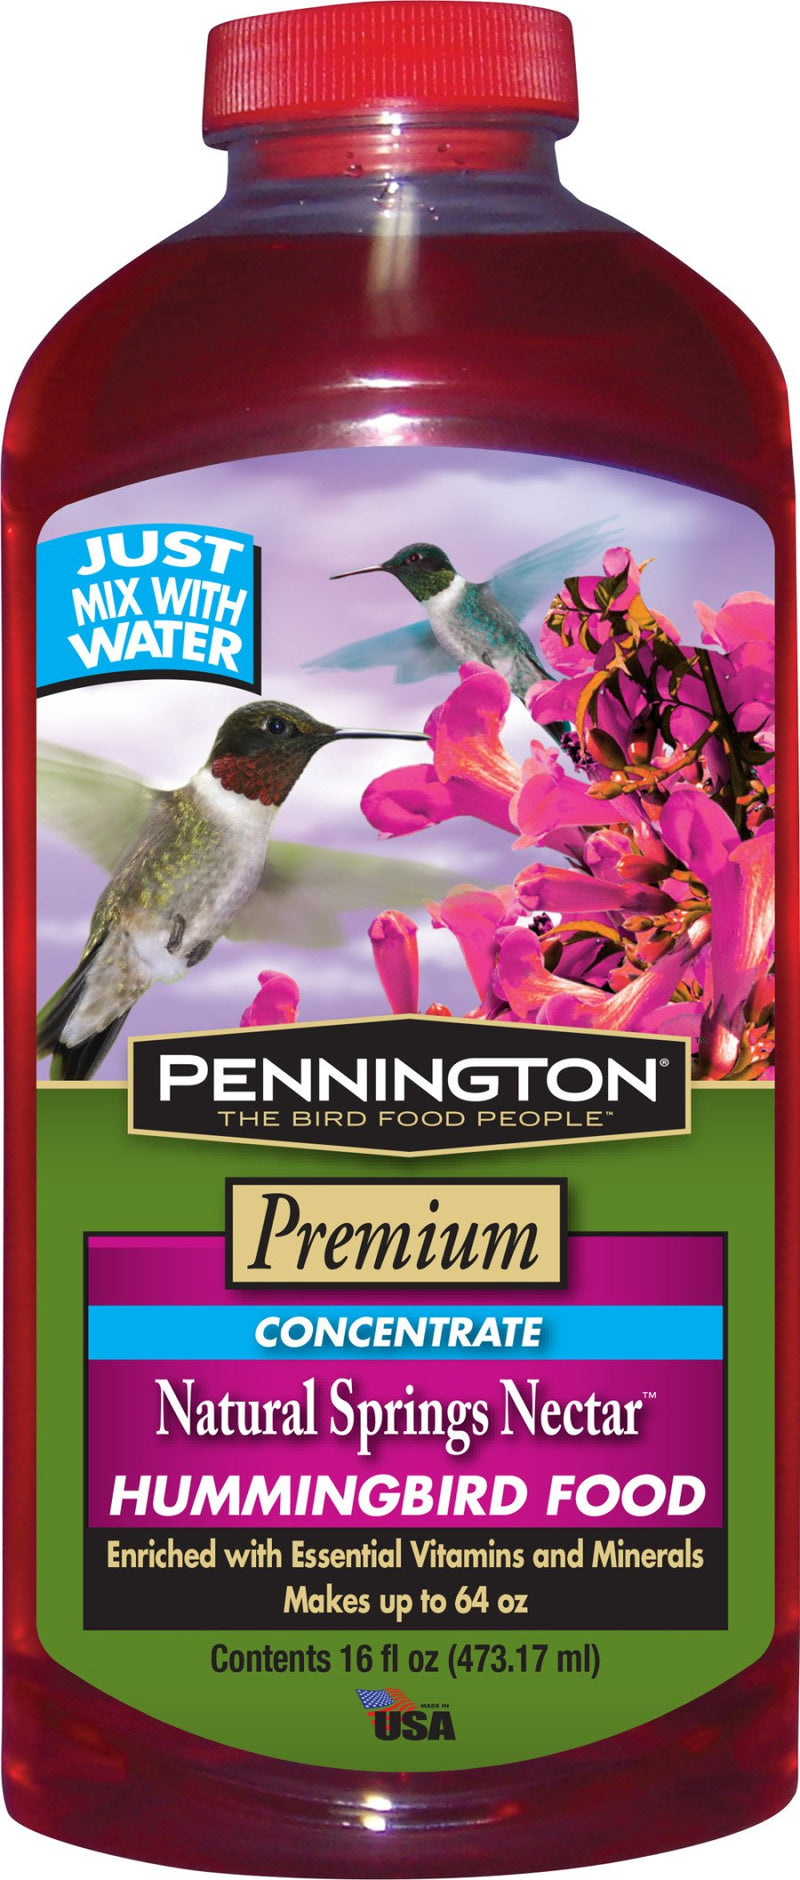 Pennington Natural Springs Nectar Hummingbird Food Concentrate 16oz